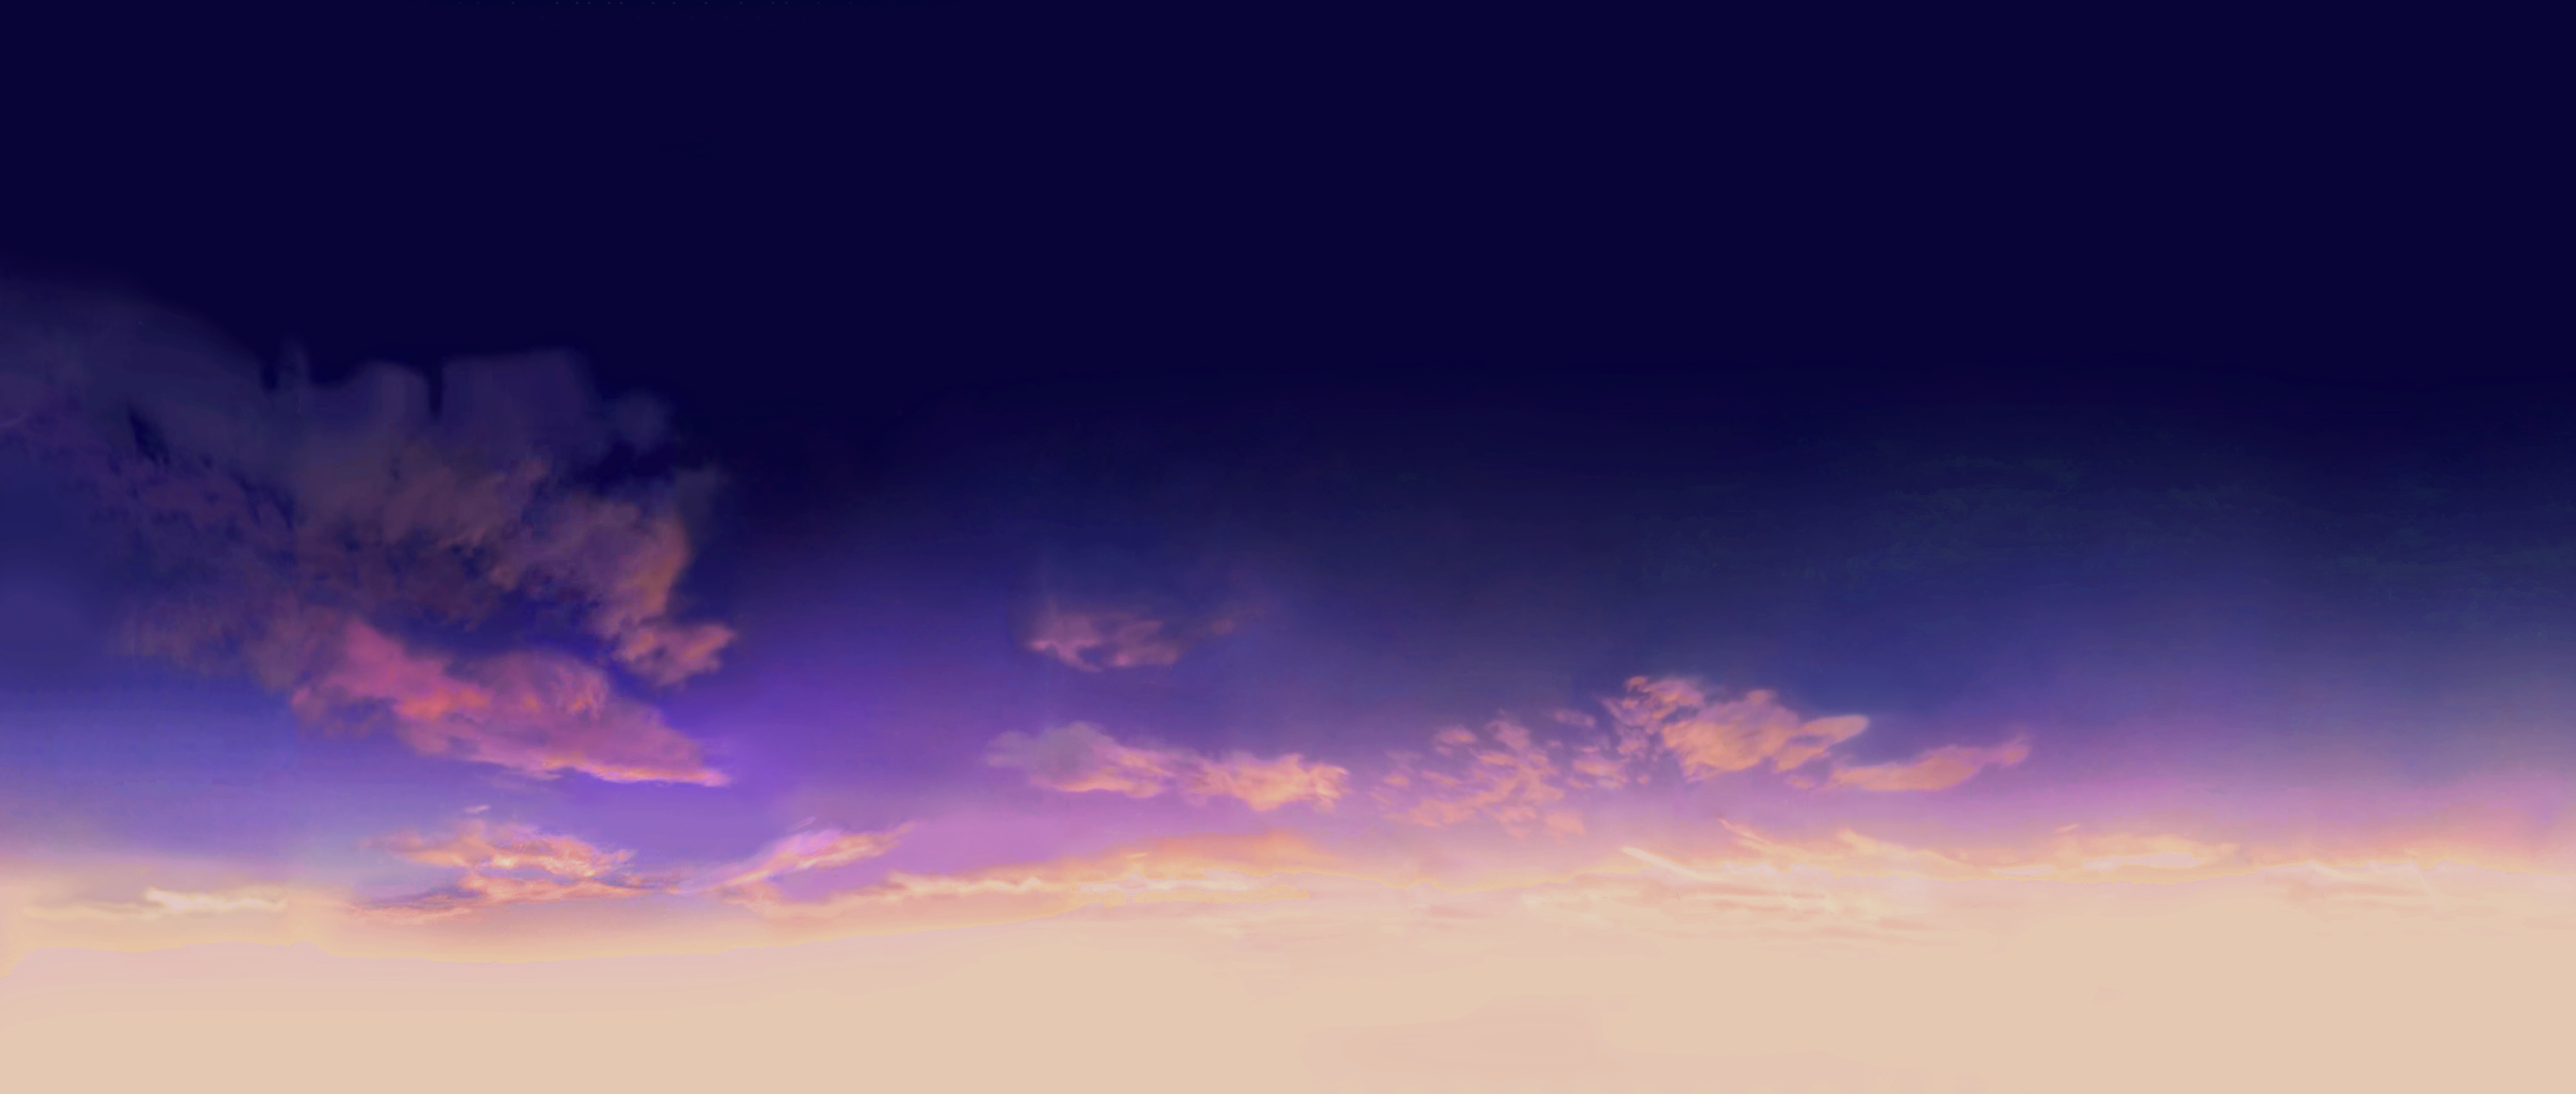 evening sky background: Một bầu trời đầy sao ánh sáng, hoặc những tia nắng vàng lung linh. Hình ảnh về evening sky background sẽ khiến bạn thích thú với cảnh vật tuyệt đẹp của đêm hoặc muôn sắc của hoàng hôn. Đồng thời, hình ảnh này còn rất hữu ích trong việc thiết kế đồ họa và làm hình nền cho máy tính của bạn.